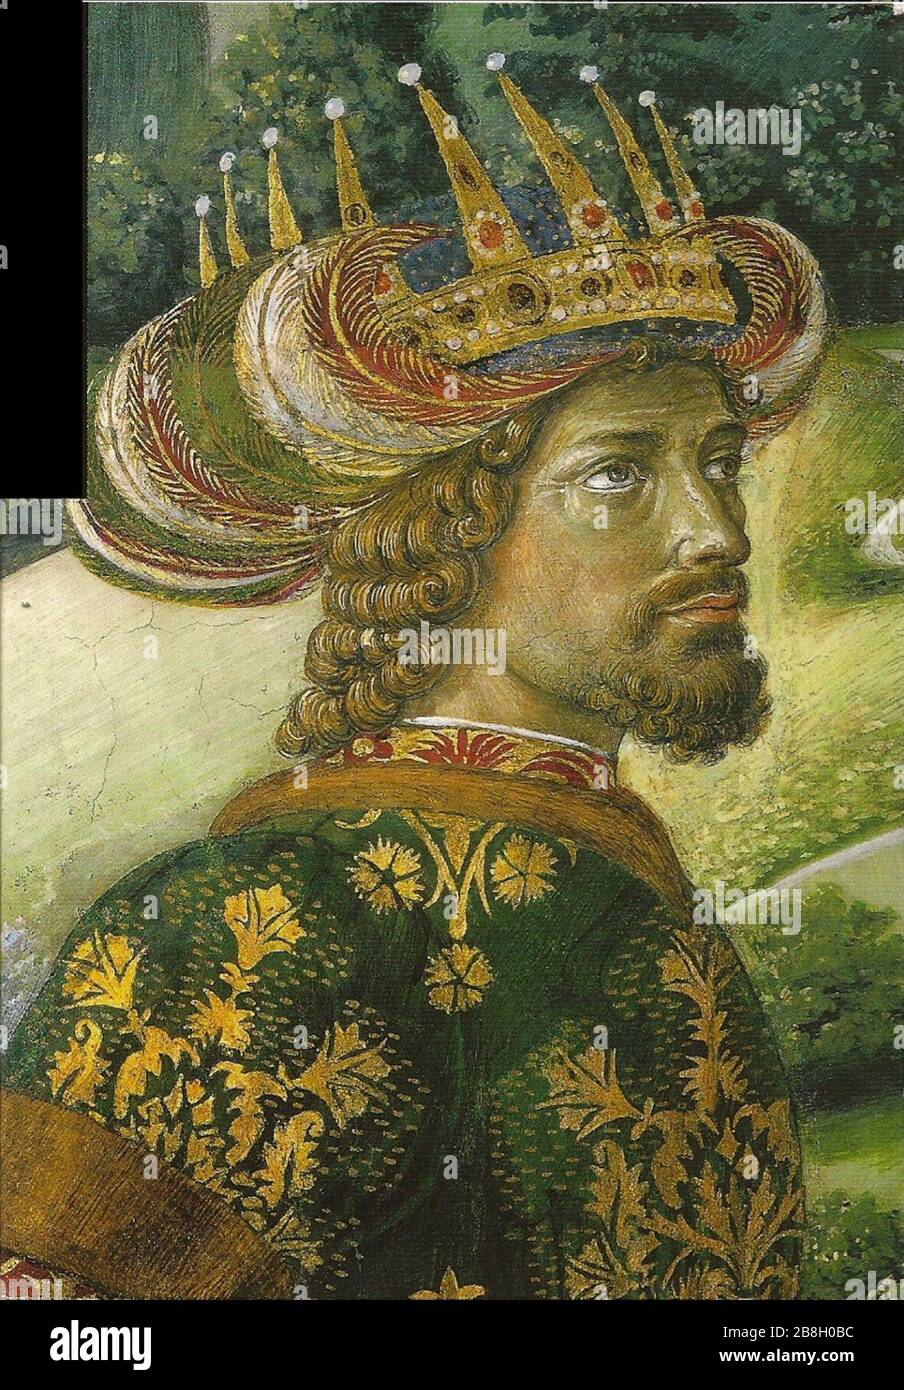 Gozzoli, Benozzo - Cavalcata dei Re Magi - Ioannes VIII Palaiologus. Stock Photo